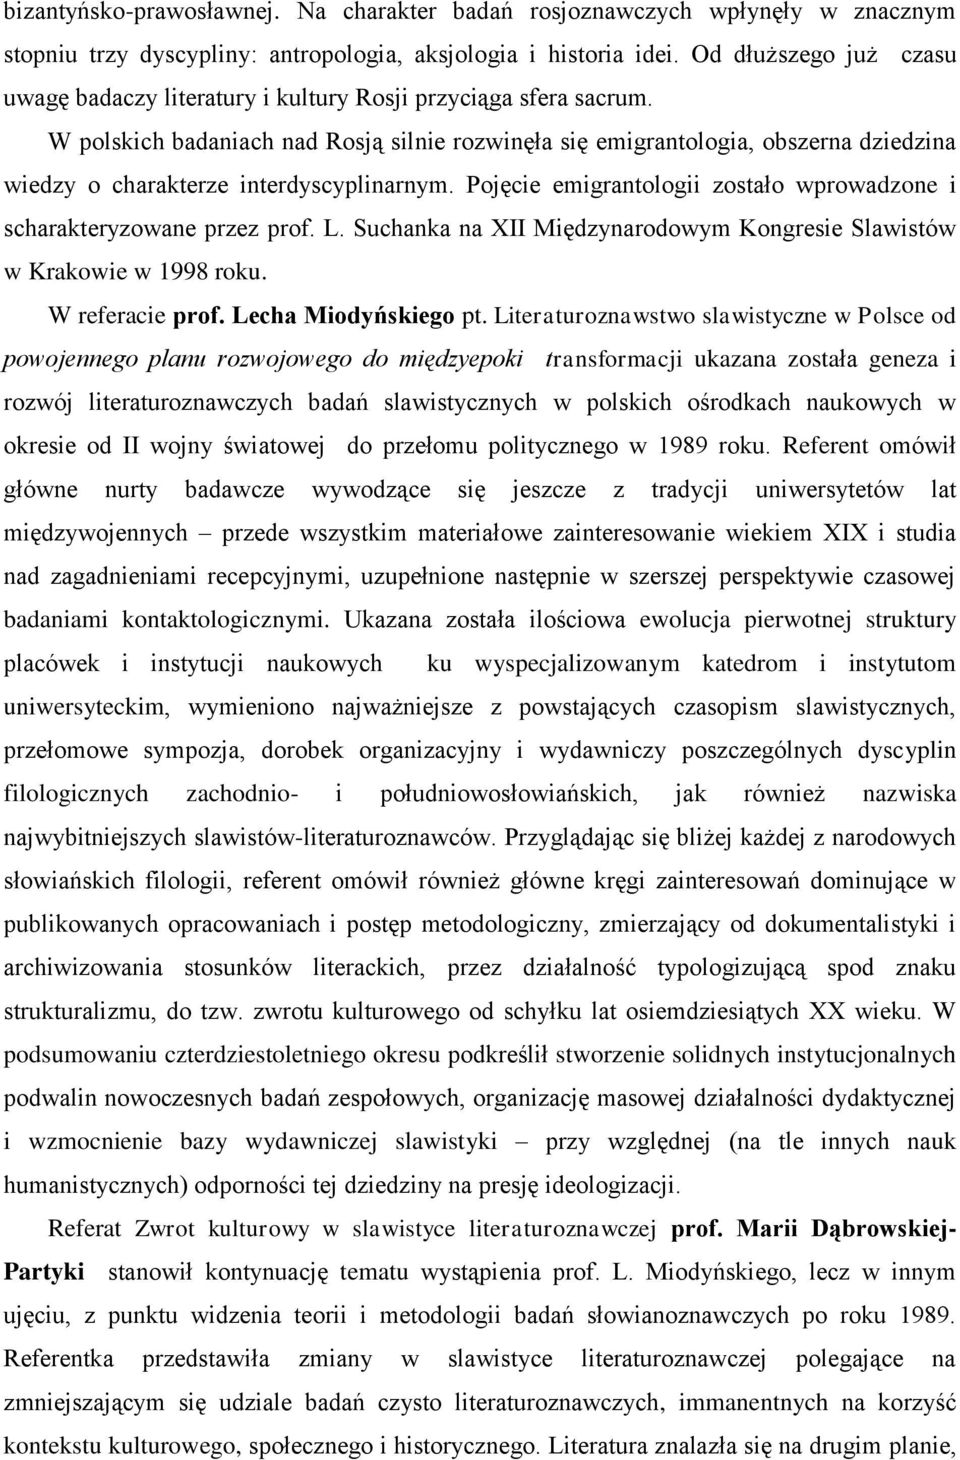 W polskich badaniach nad Rosją silnie rozwinęła się emigrantologia, obszerna dziedzina wiedzy o charakterze interdyscyplinarnym.